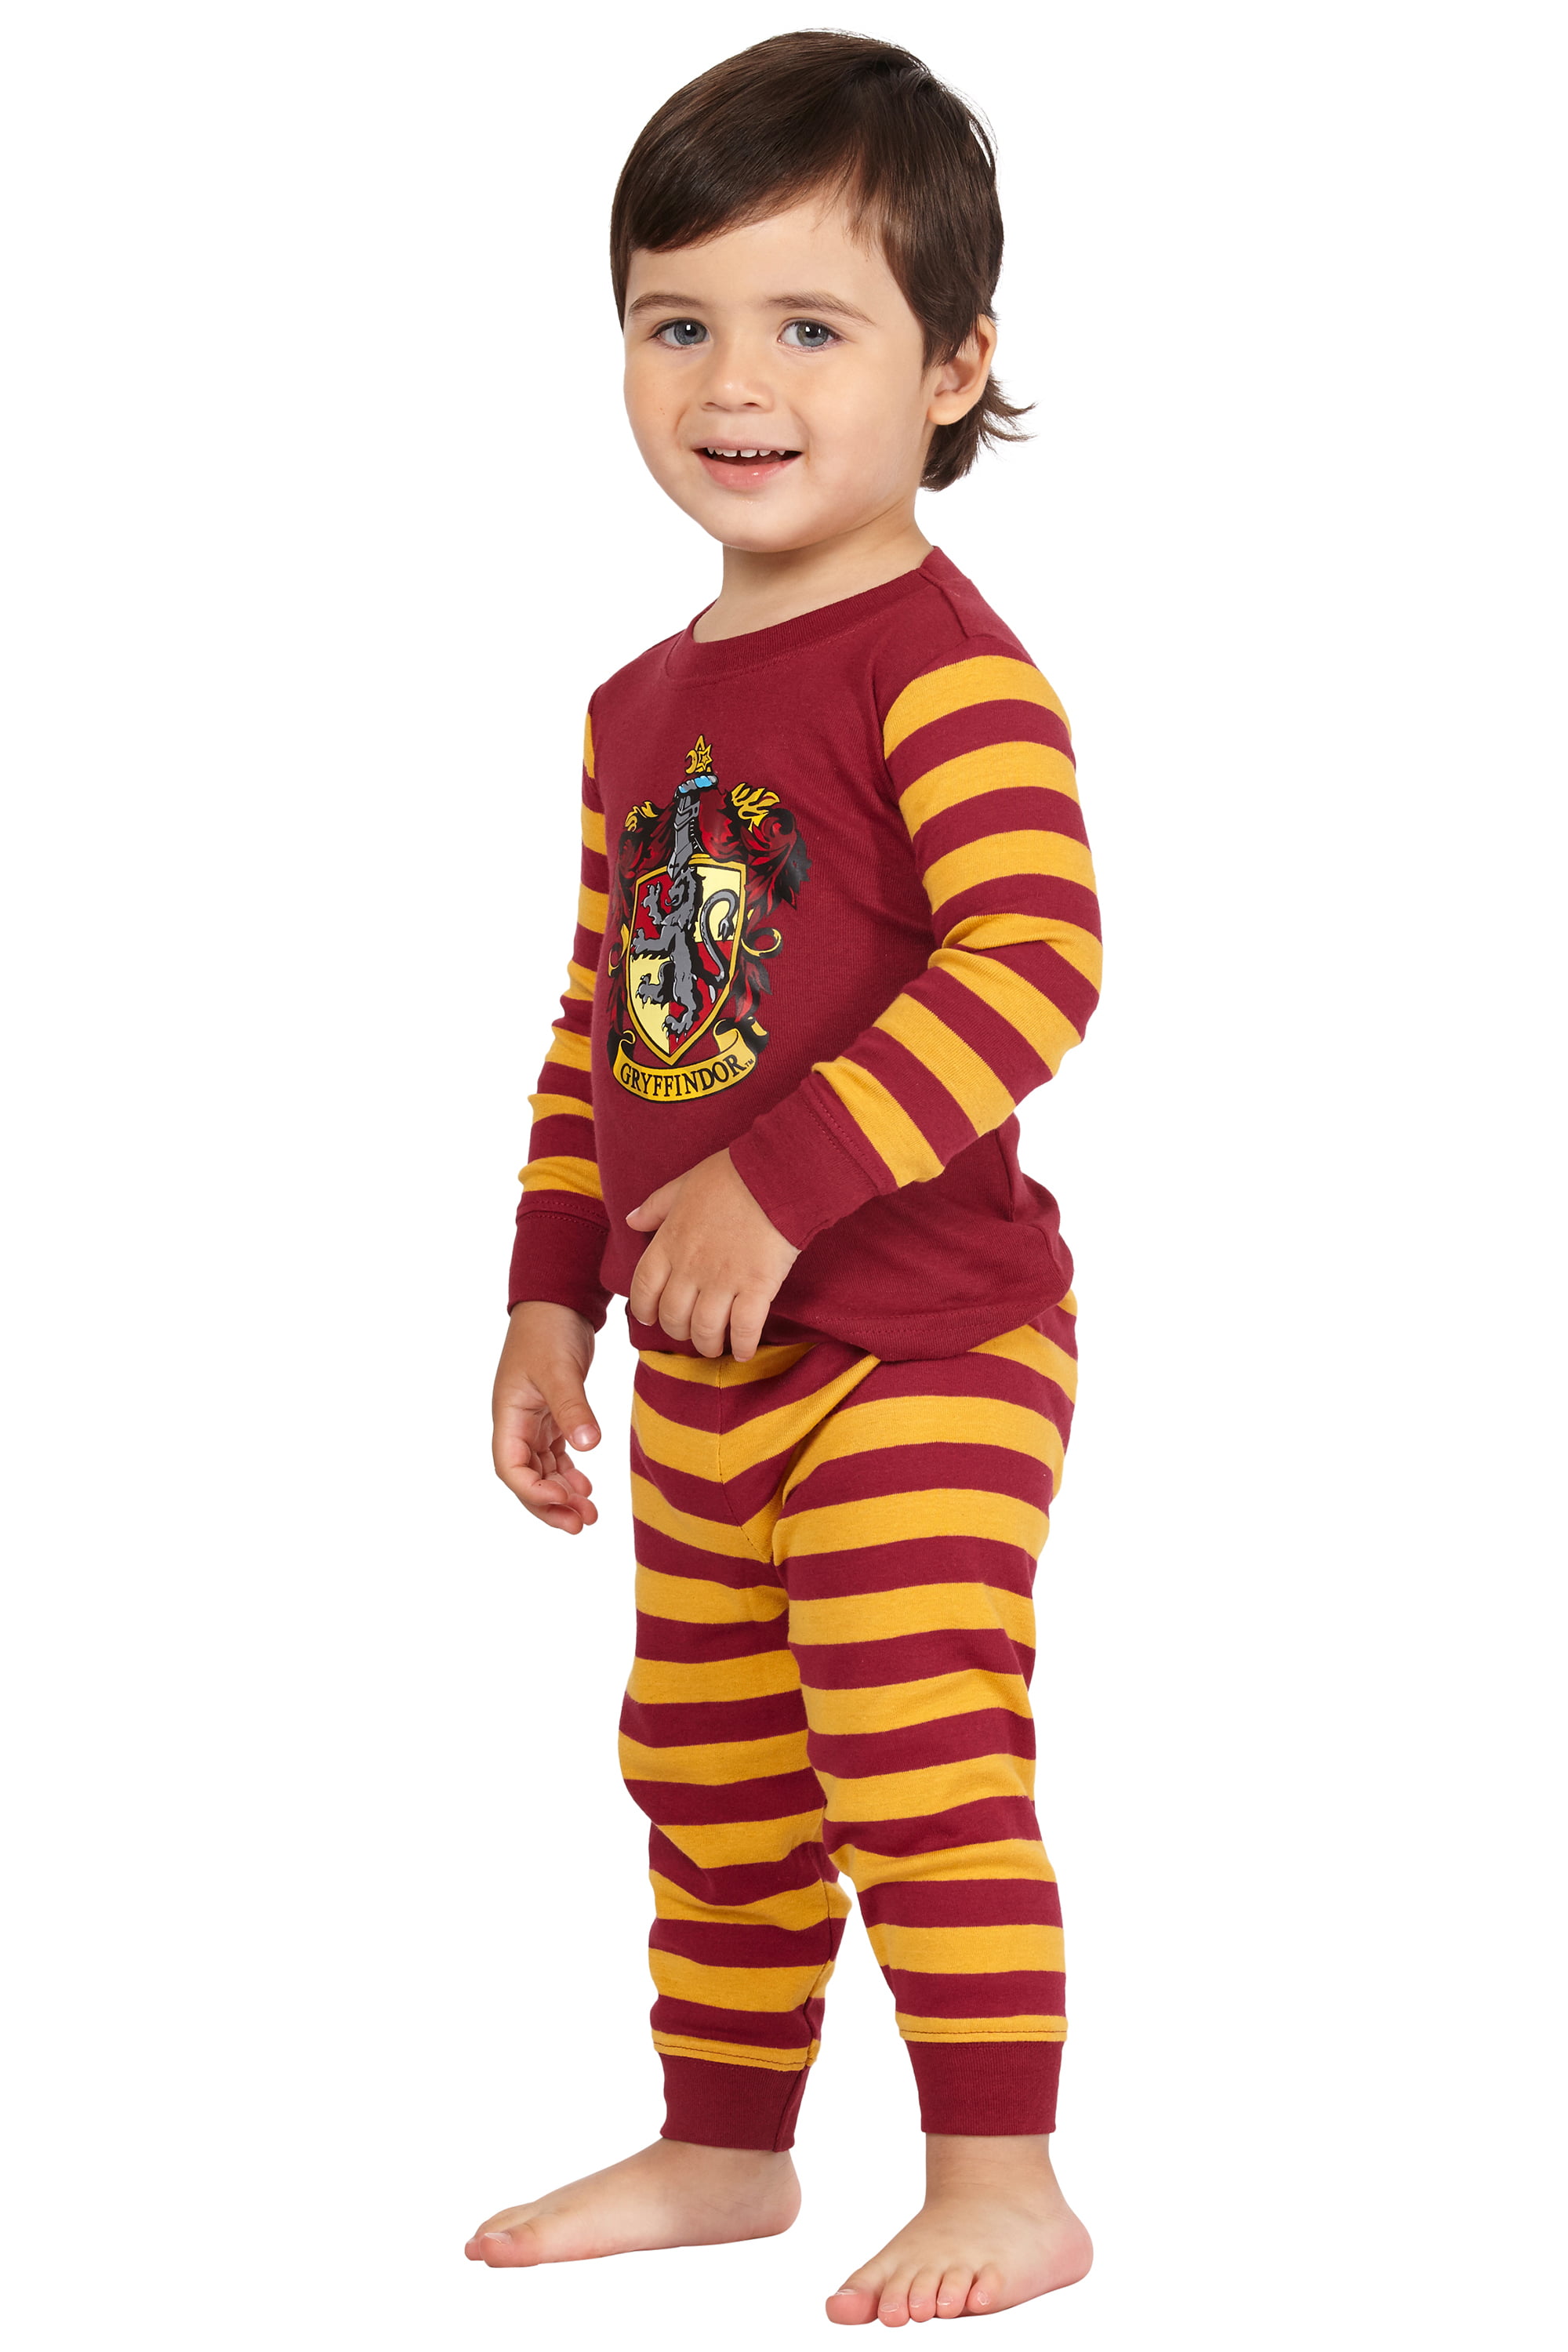 Harry Potter Baby Hogwarts Houses Crest Logo Cotton Infant Pajama Gift Set